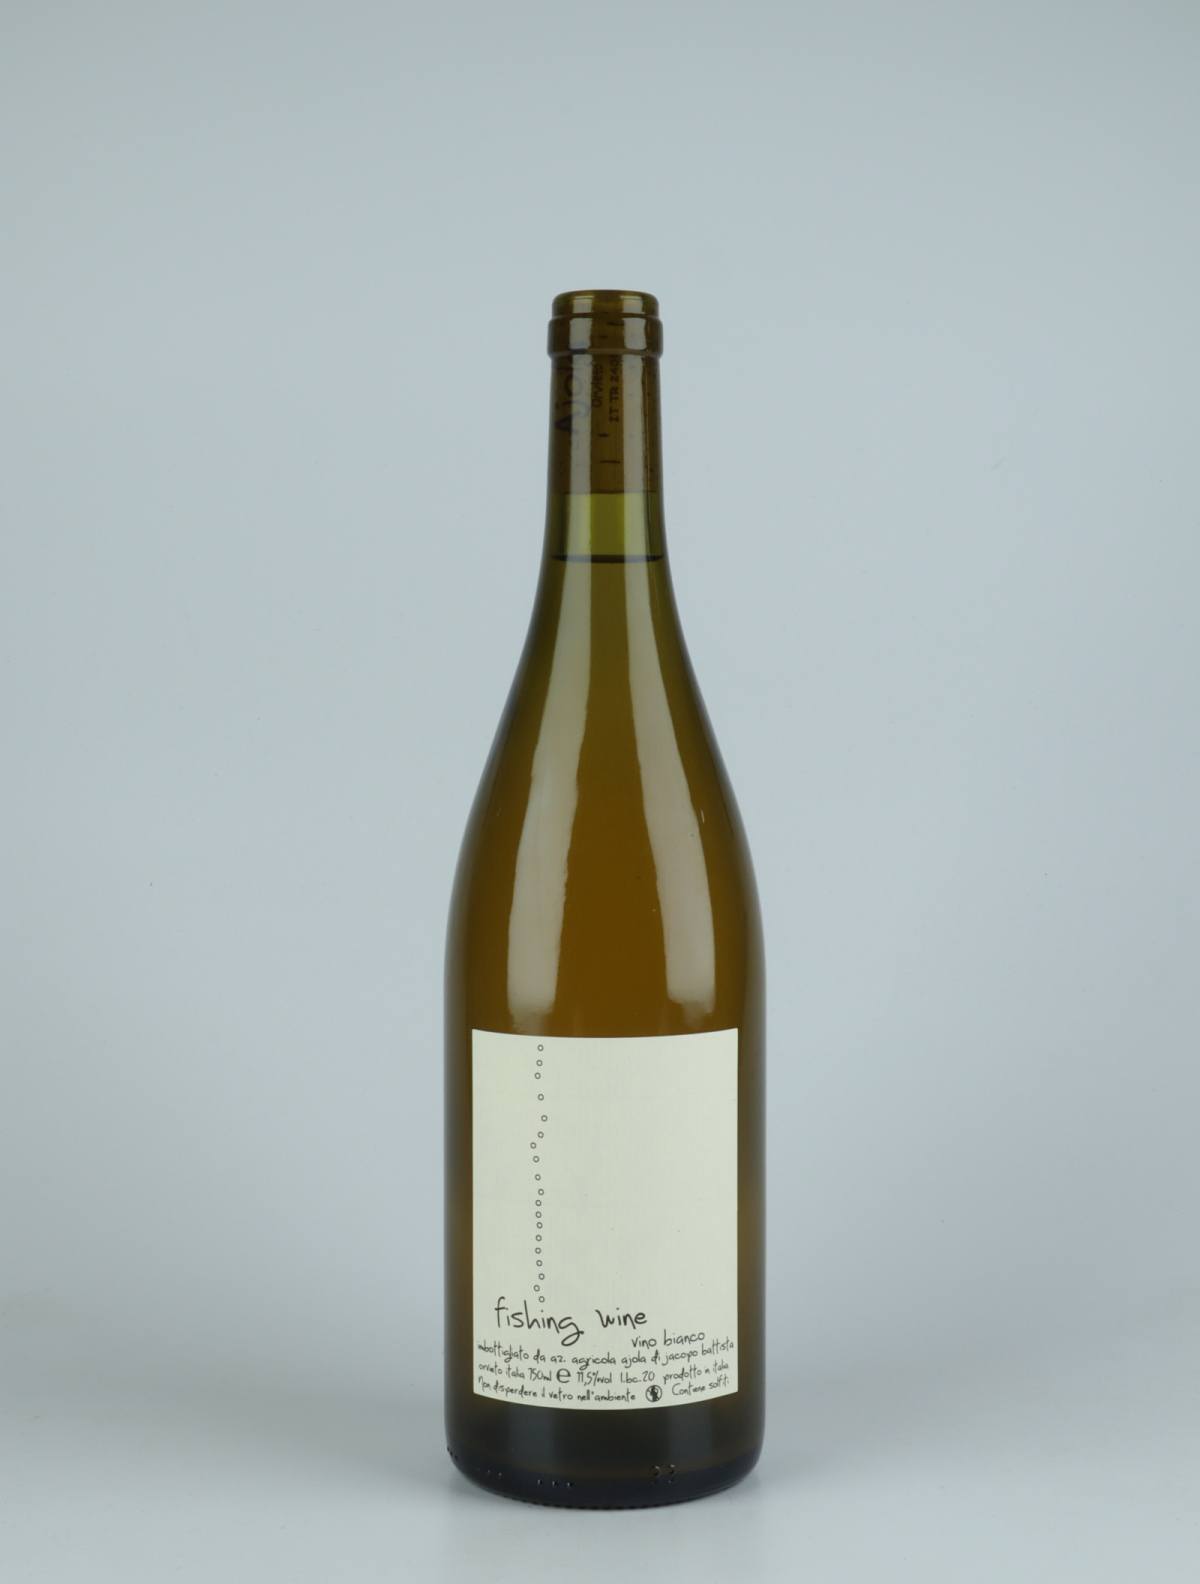 En flaske 2020 Bianco Fishing Wine Hvidvin fra Ajola, Umbrien i Italien